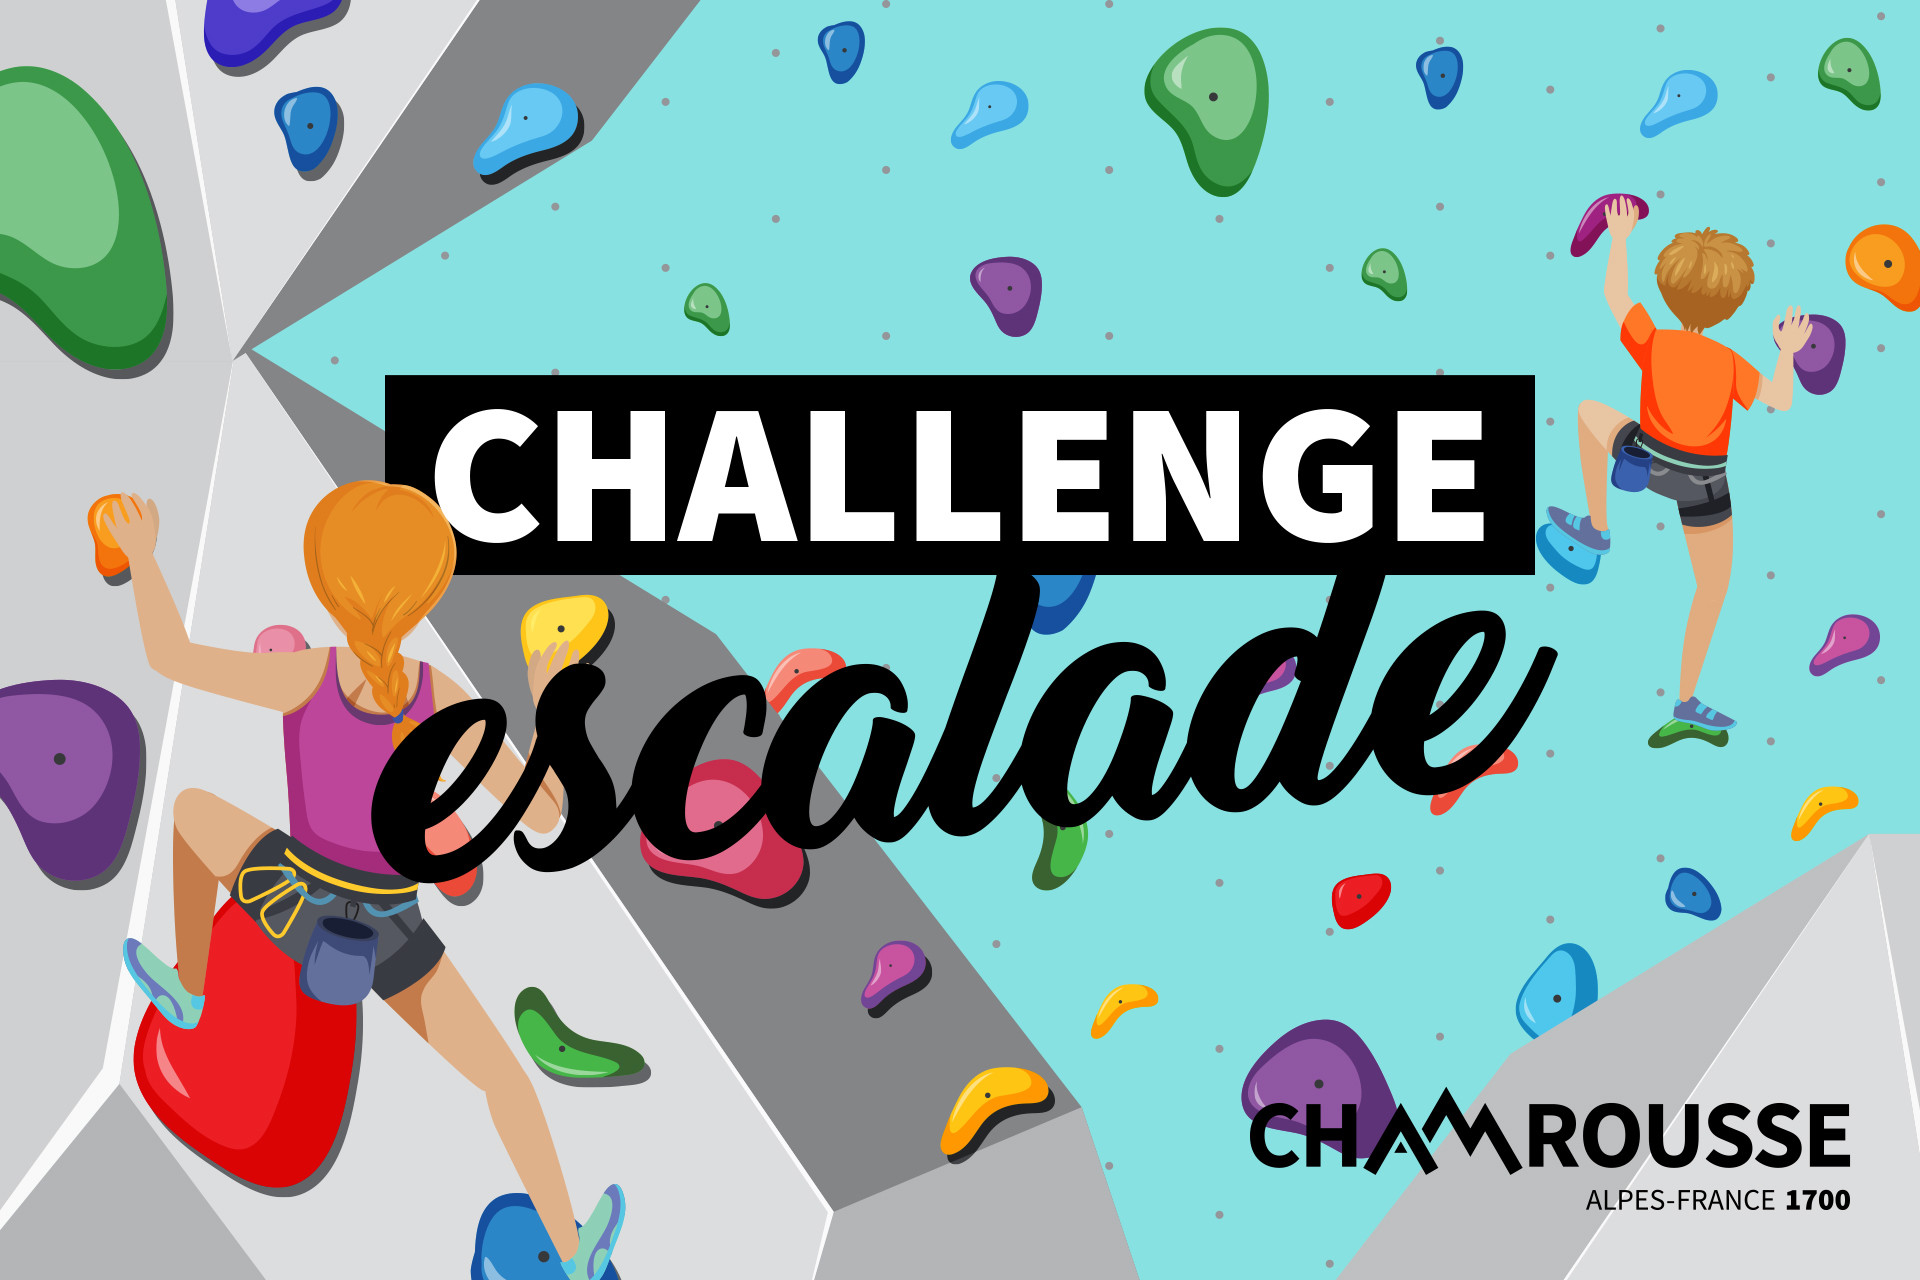 Challenge escalade Chamrousse